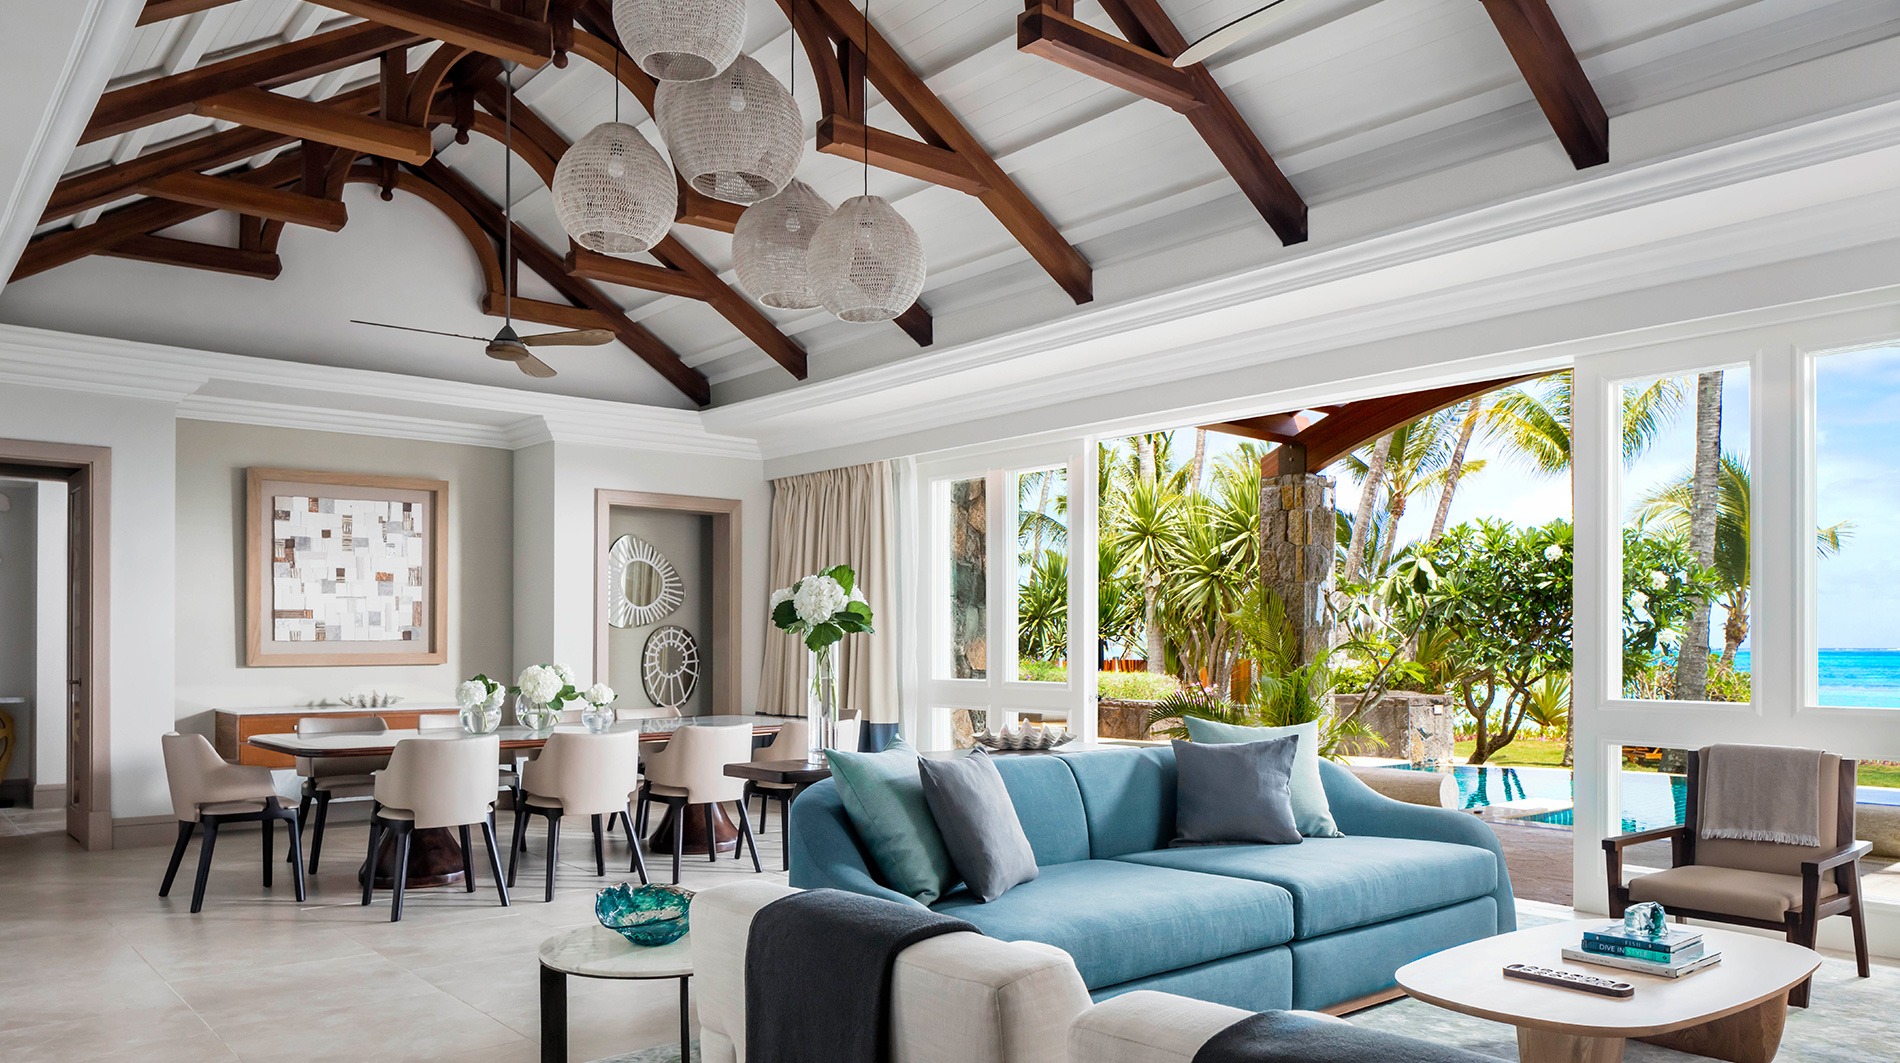 Acheter villa de luxe One&Only au Saint Géran de l'île Maurice - Hôtel 5 étoiles de prestige